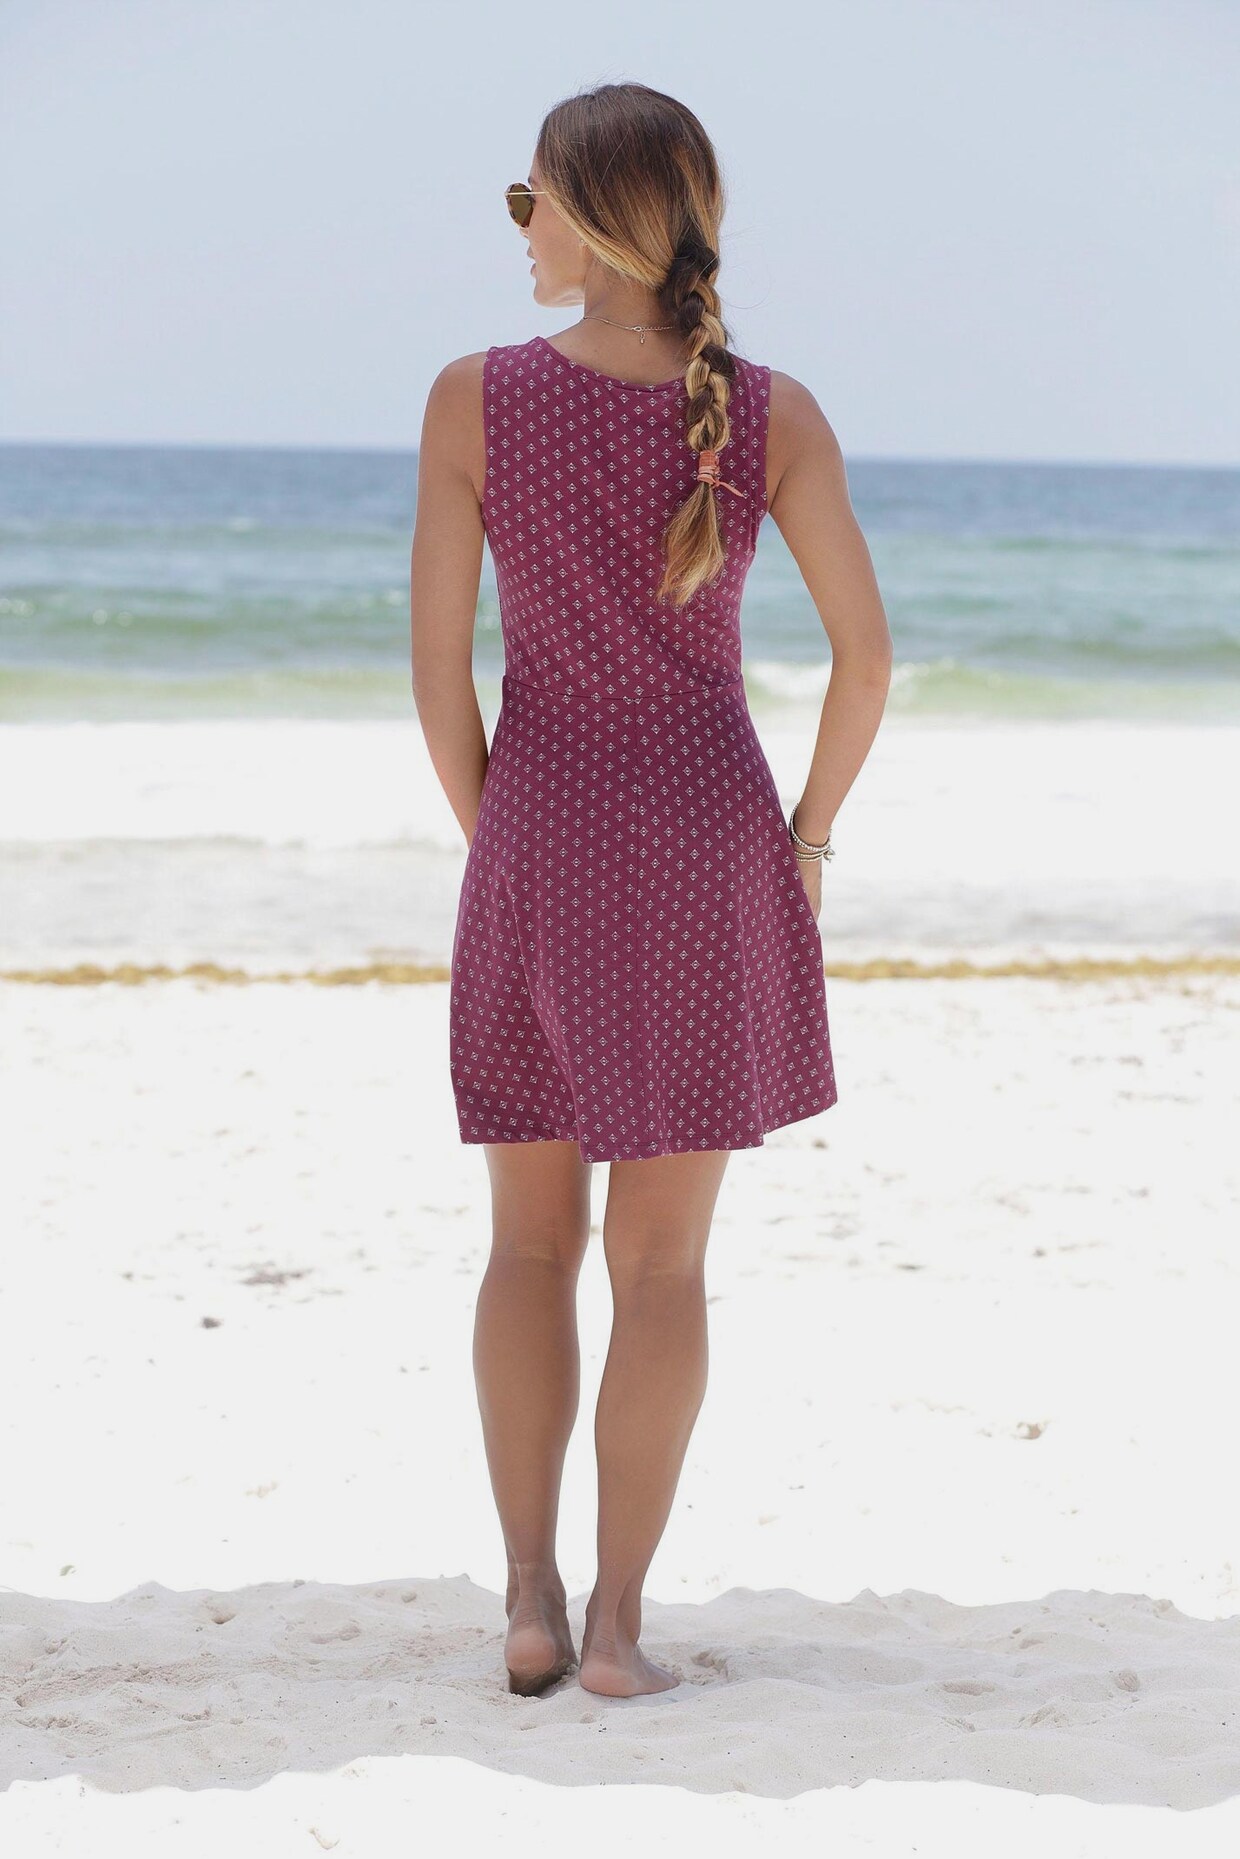 Beachtime Strandkleid - bordeaux-weiß